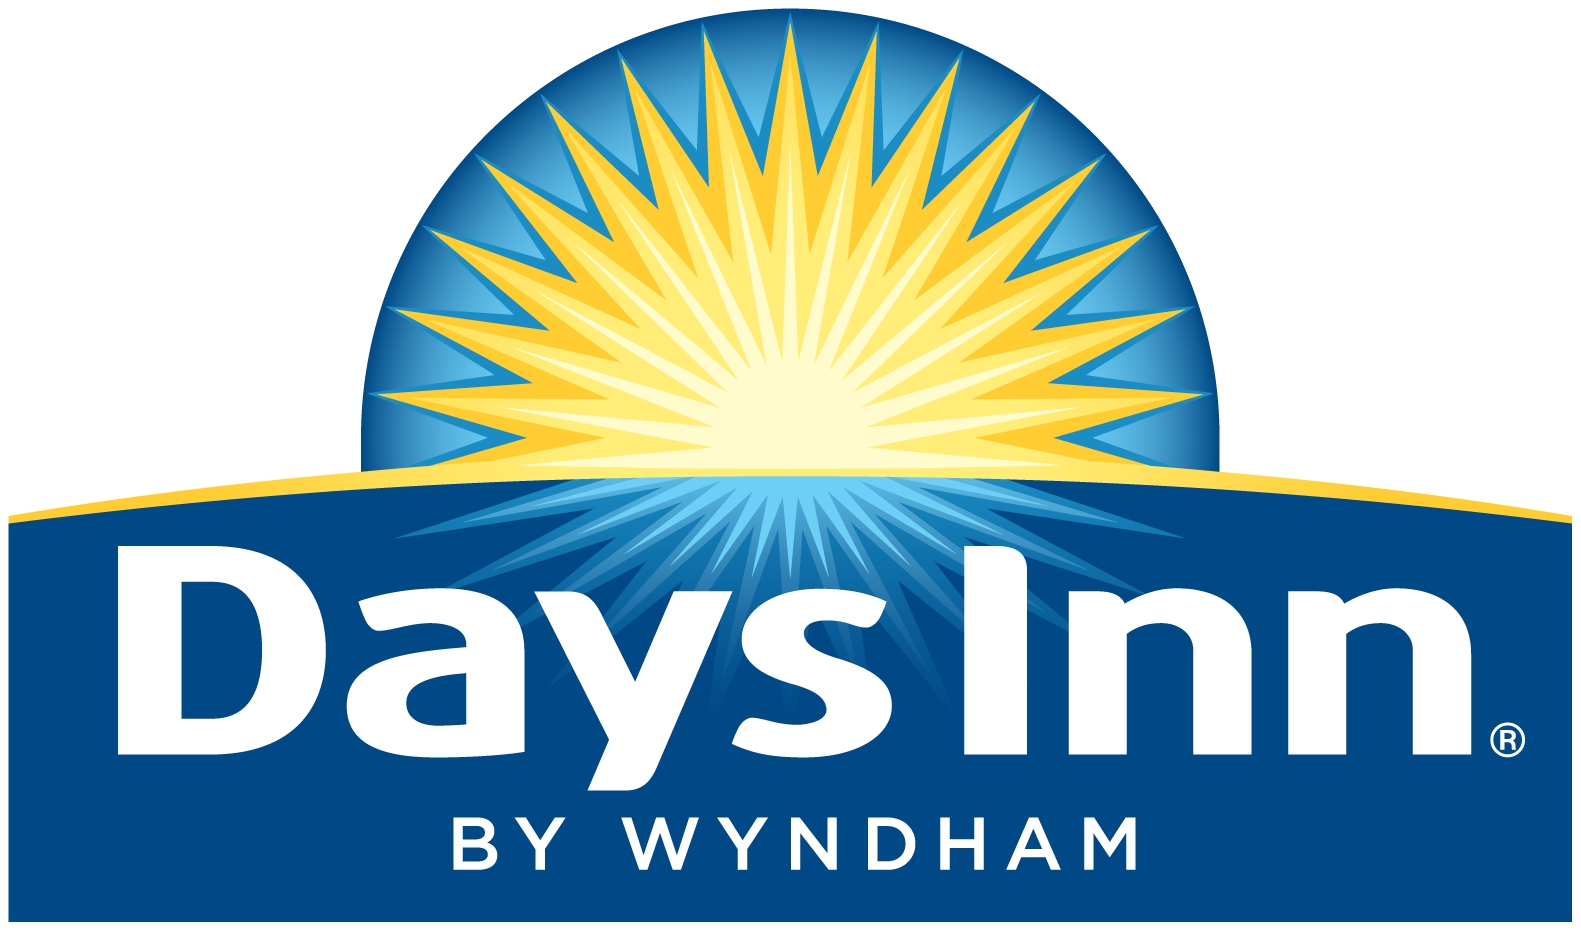 New Days Inn logo by Wyndham